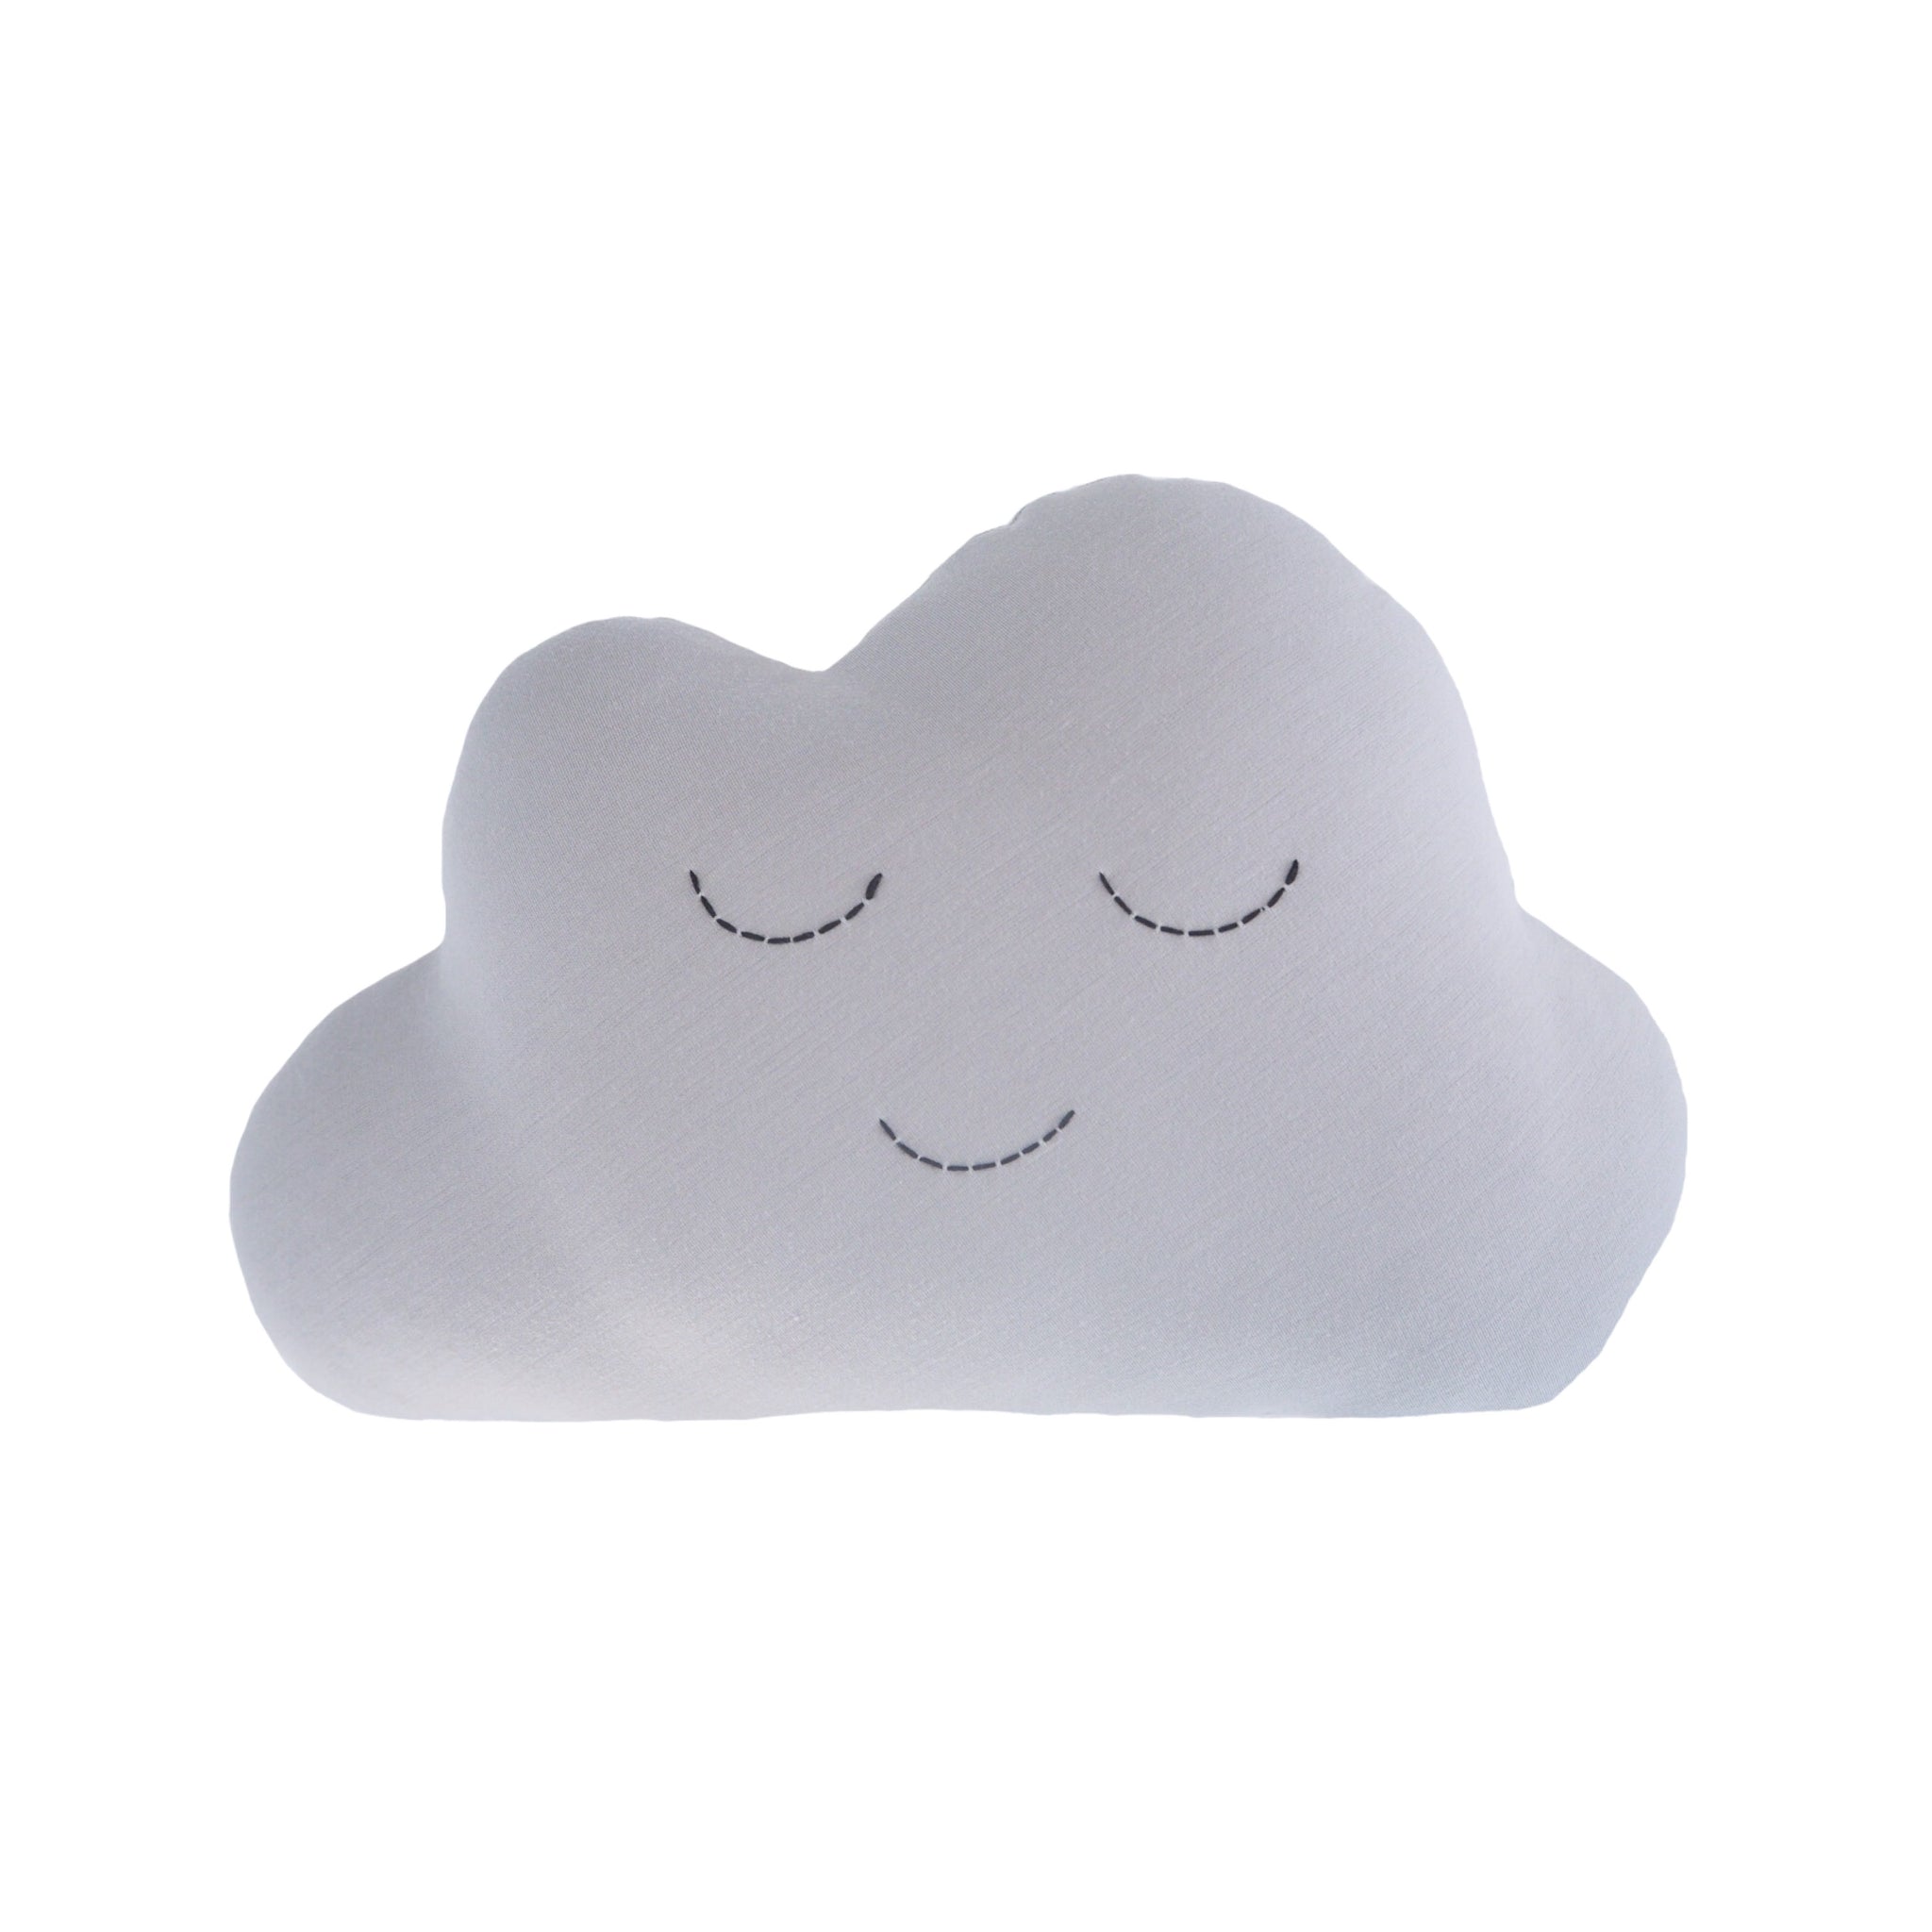 Mini Grey Cloud Cushion - Little Bambino Bear